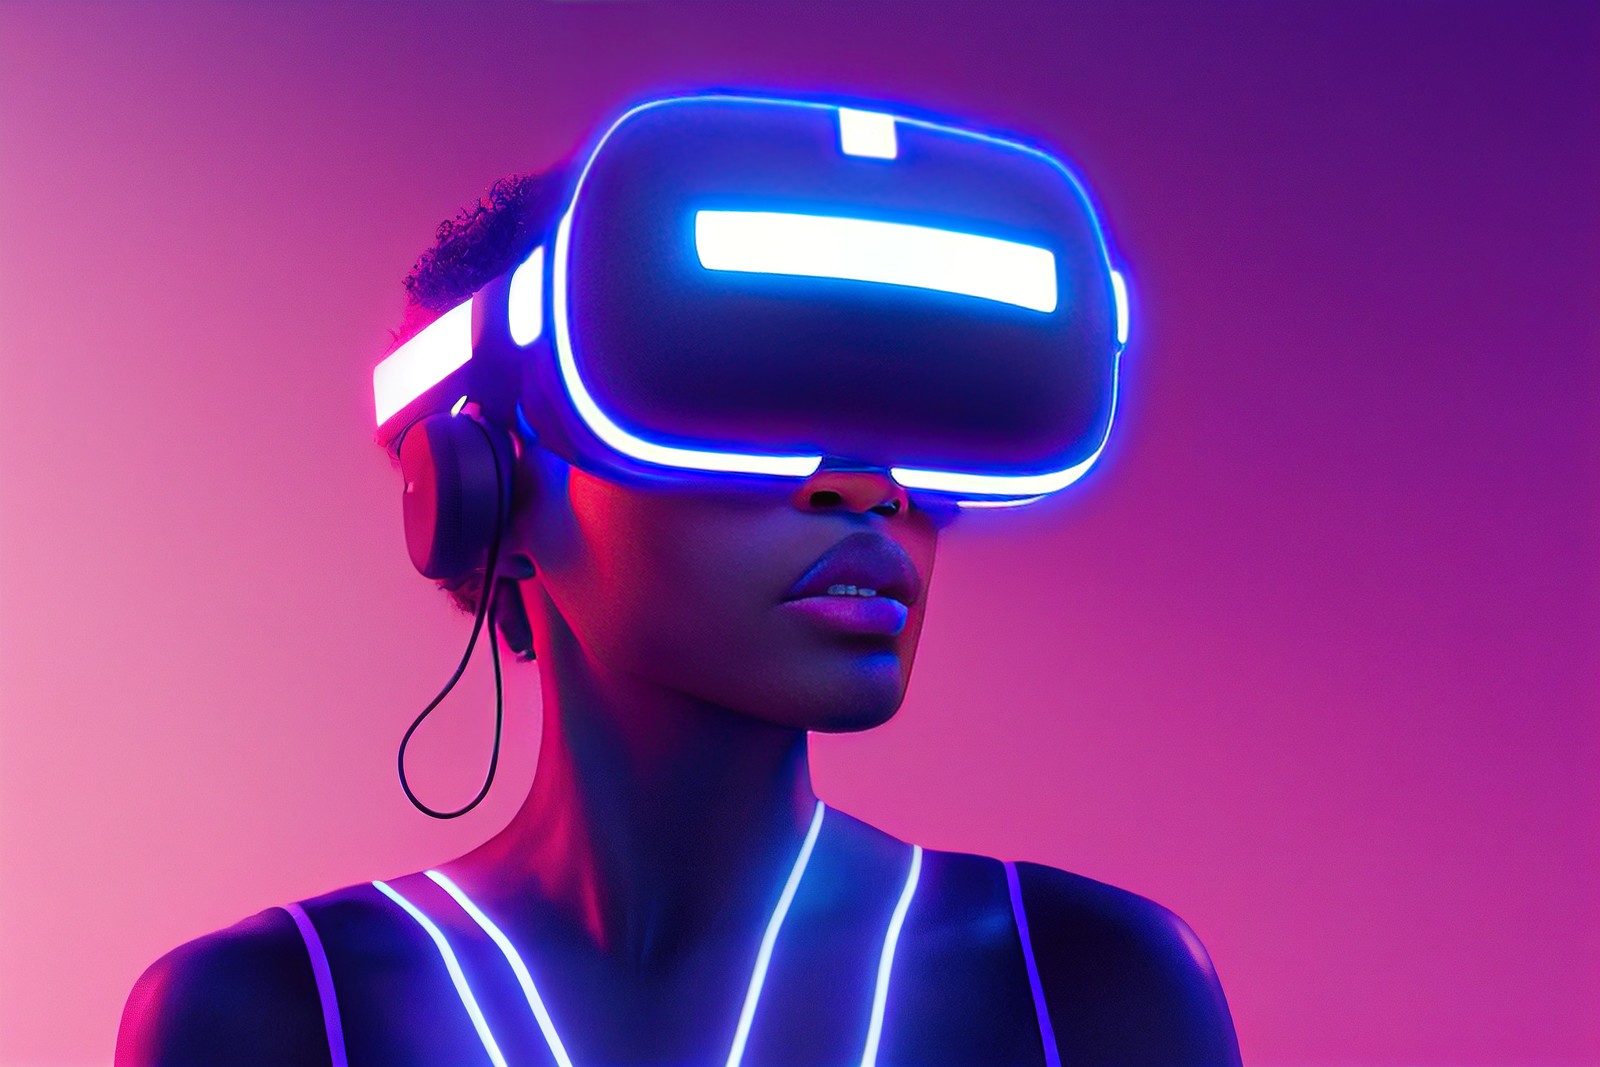 图片展示一位女性佩戴虚拟现实头盔和耳机，身体轮廓发光，背景是紫色和粉色渐变。